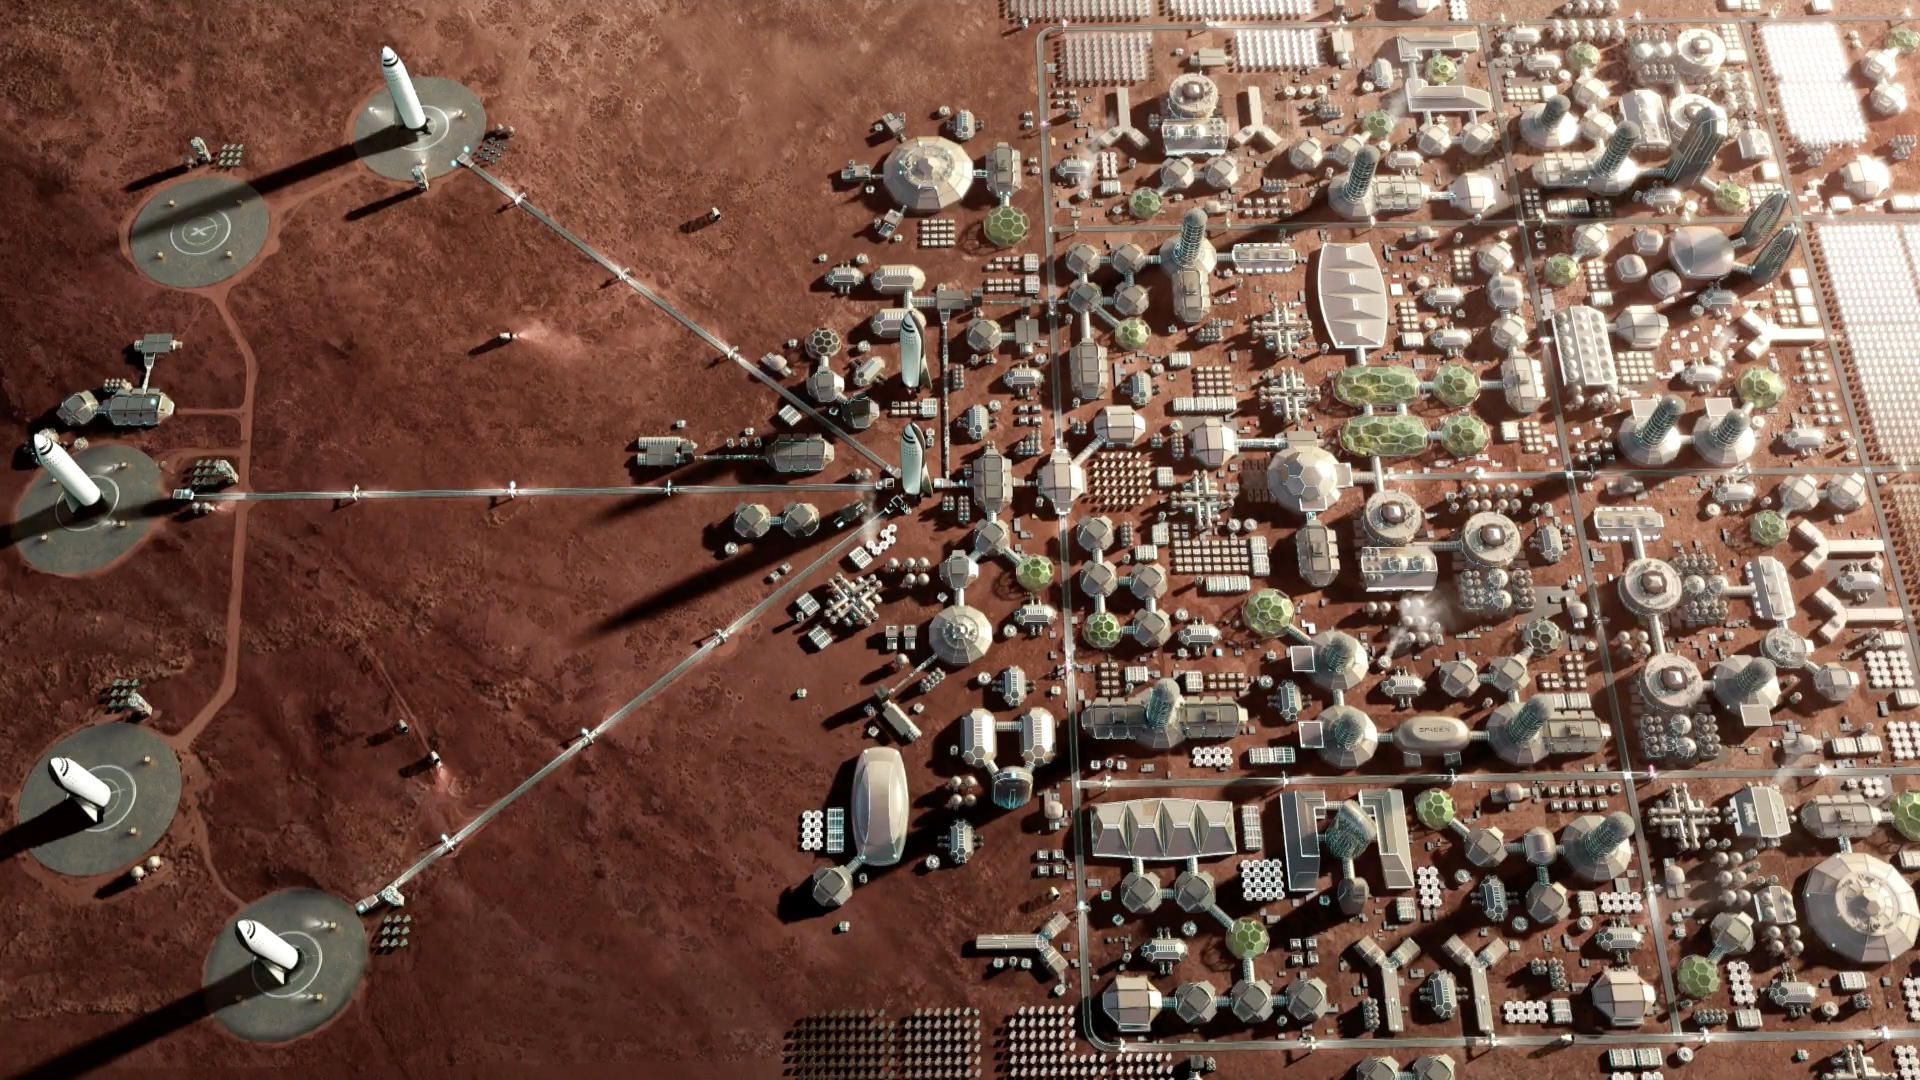 Musk từng đề xuất đưa 80.000 người lên Sao Hỏa trong 15 đến 20 năm, liệu việc thuộc địa hóa Sao Hỏa có thành hiện thực? - Ảnh 2.